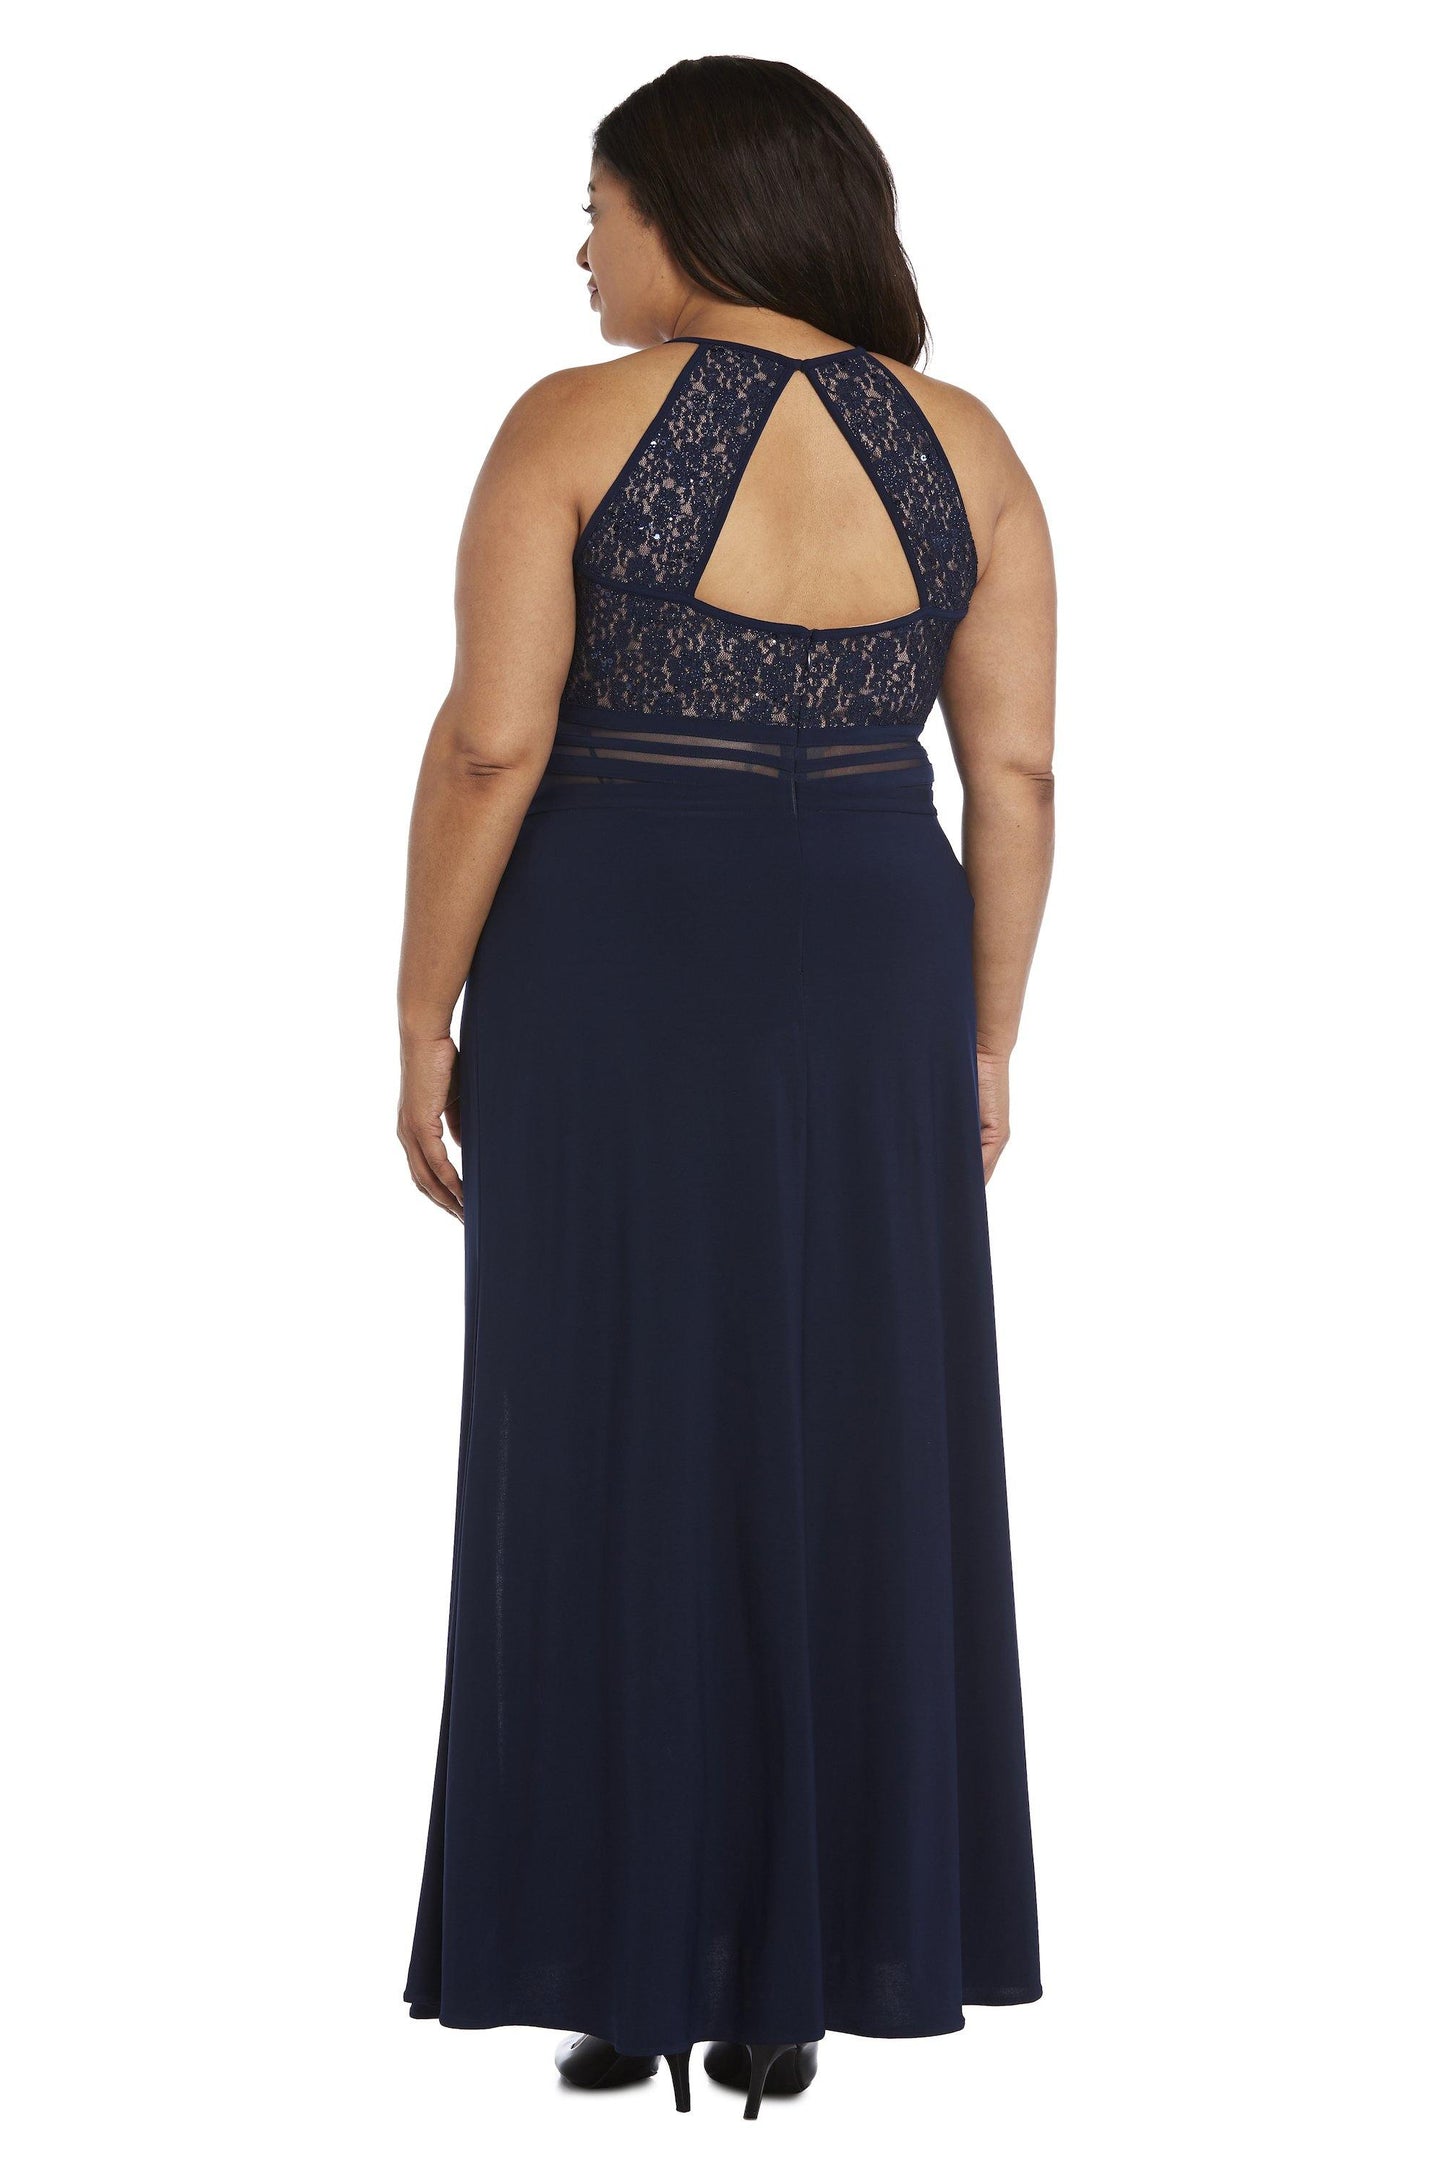 Morgan & Co Long Plus Size Evening Dress 12524WM - The Dress Outlet